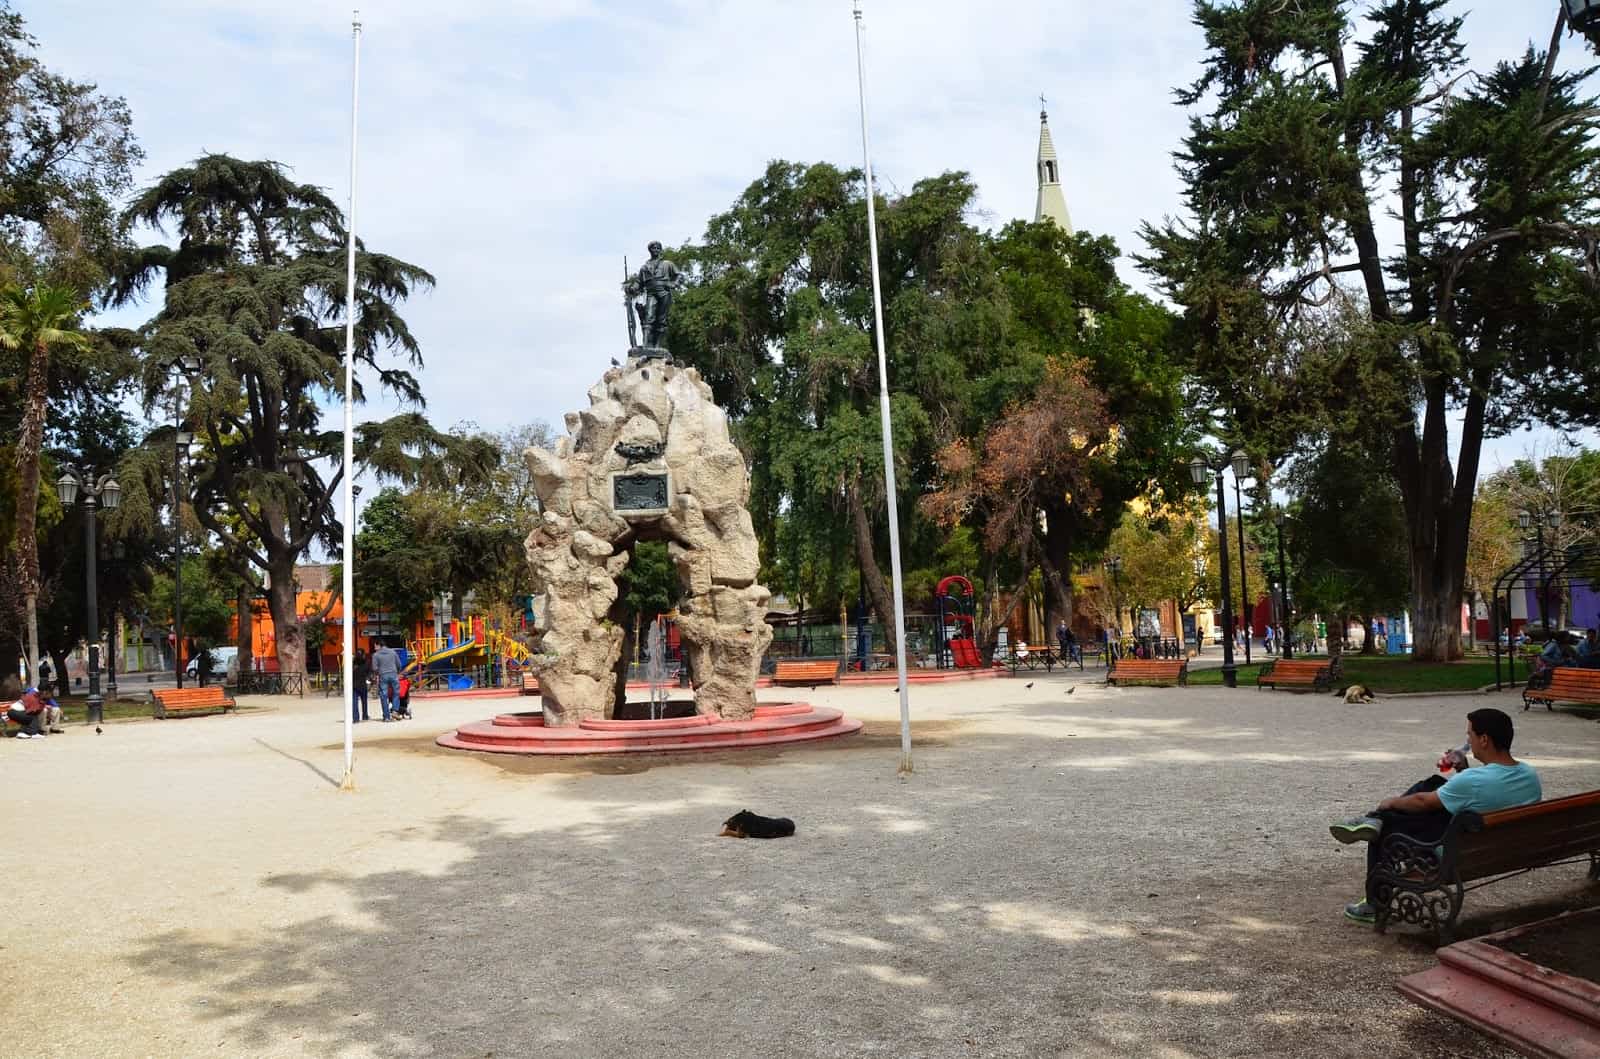 Plaza Yungay in Barrio Yungay, Santiago de Chile